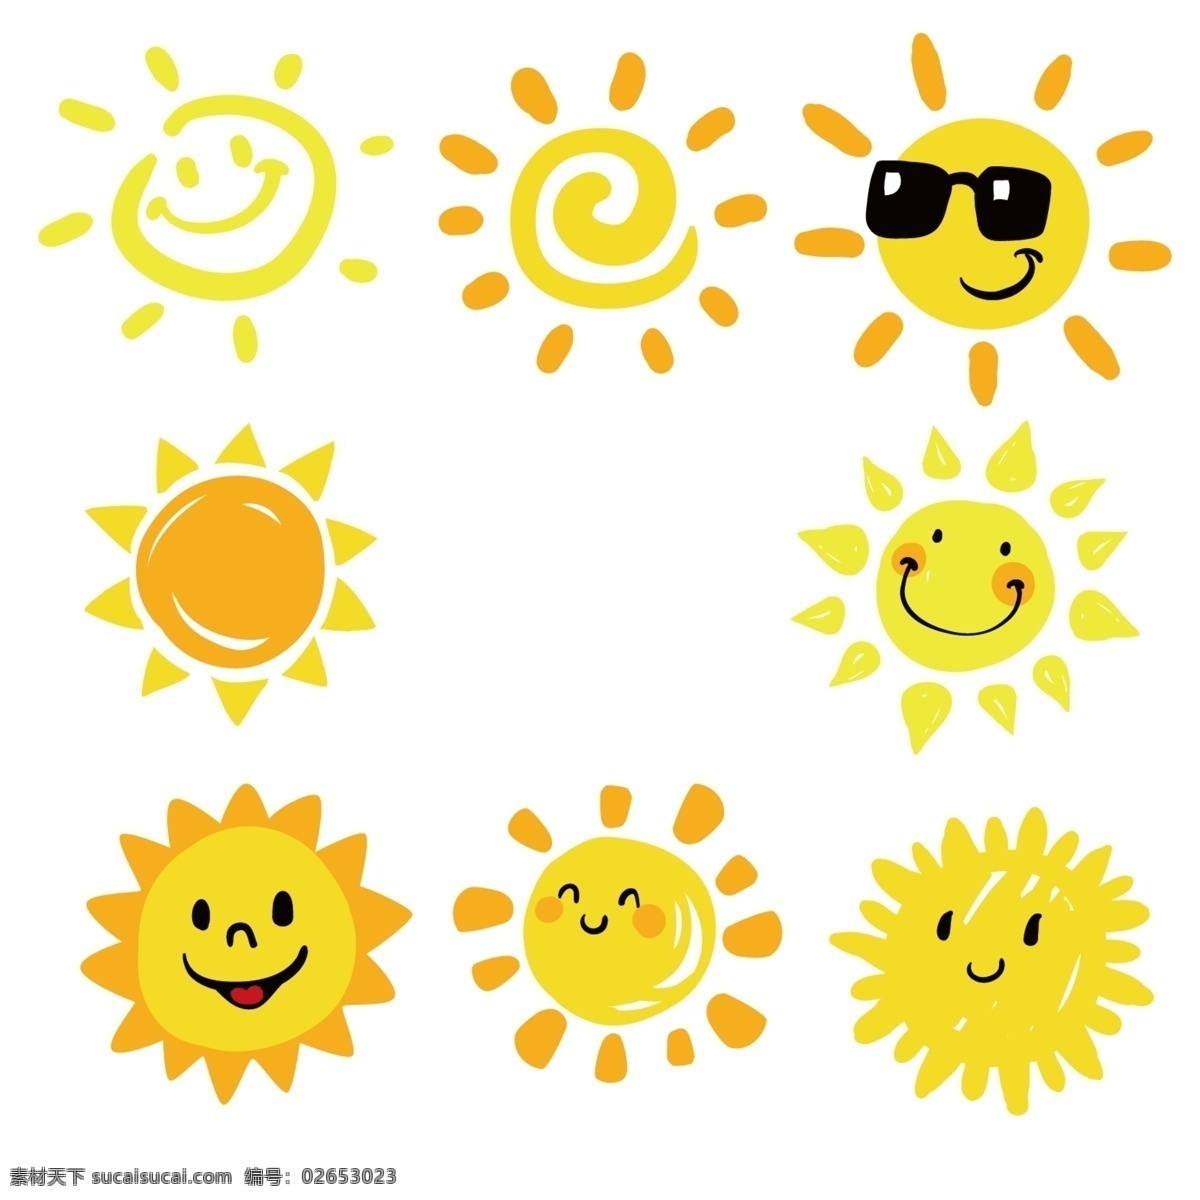 夏日 阳光 手绘 太阳 插画 可爱 太阳插画 黄色插画 图标 悬浮 可爱太阳 夏日卡通插画 卡通 卡通设计